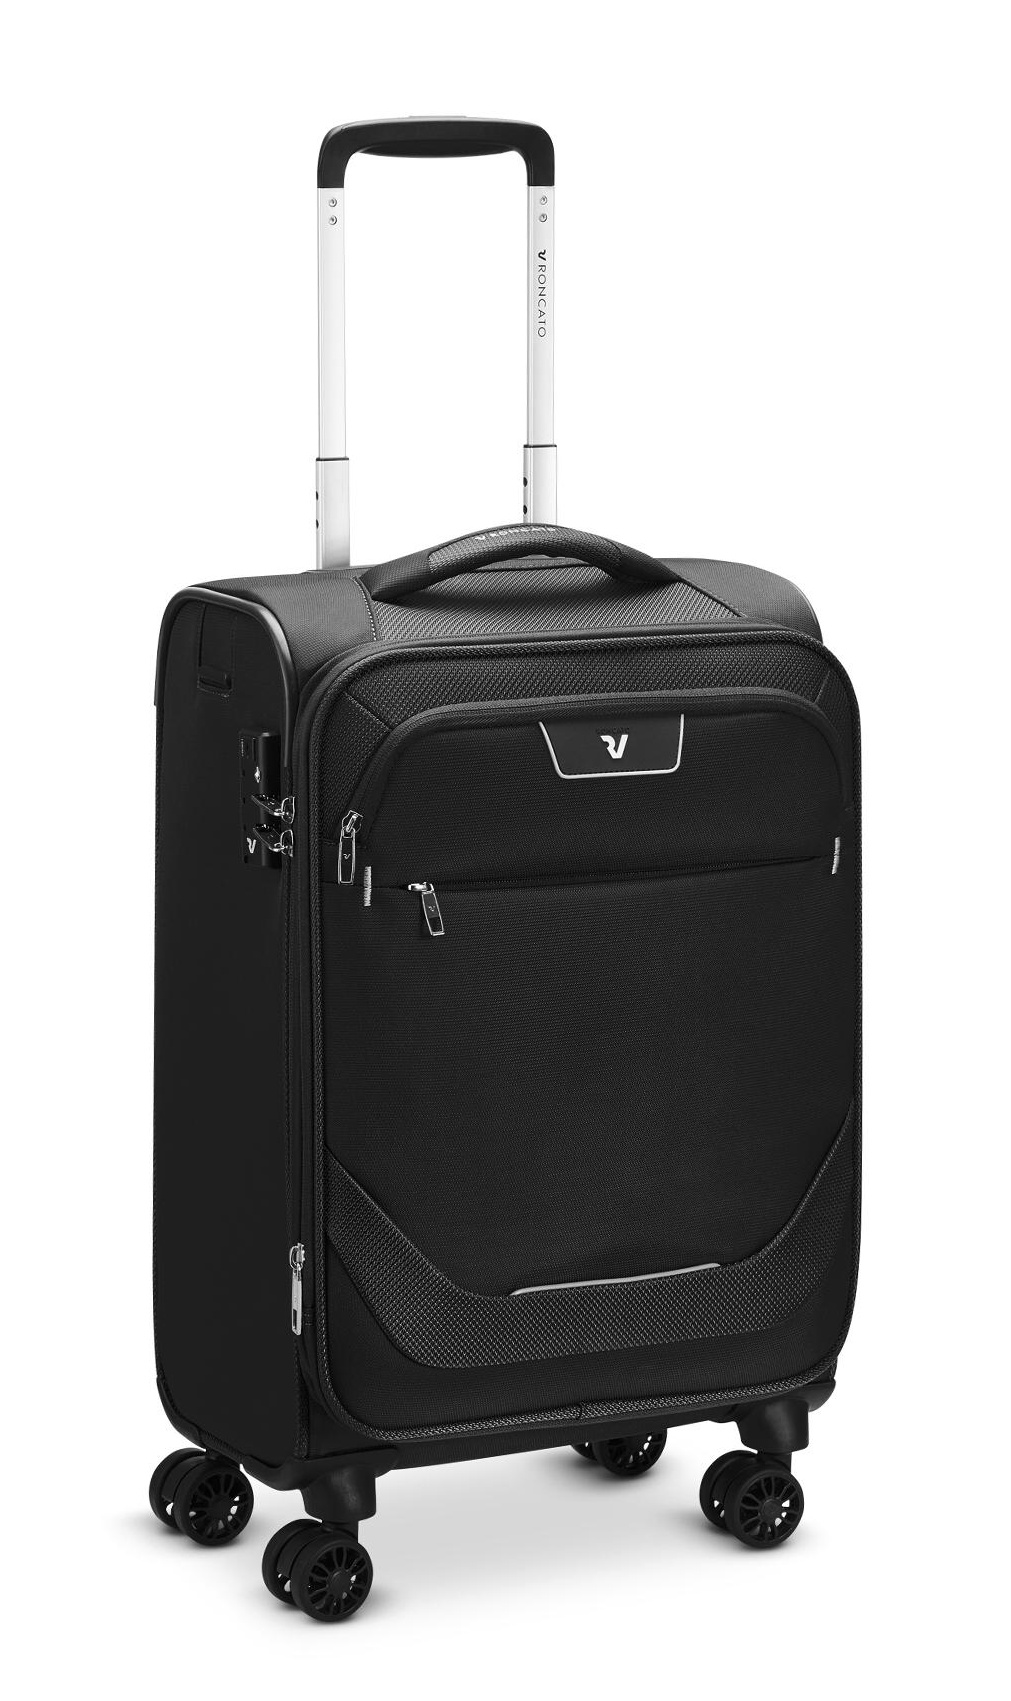 Cestovní kufr Roncato Joy 4W S Airfrance 416234-01 36 L černá